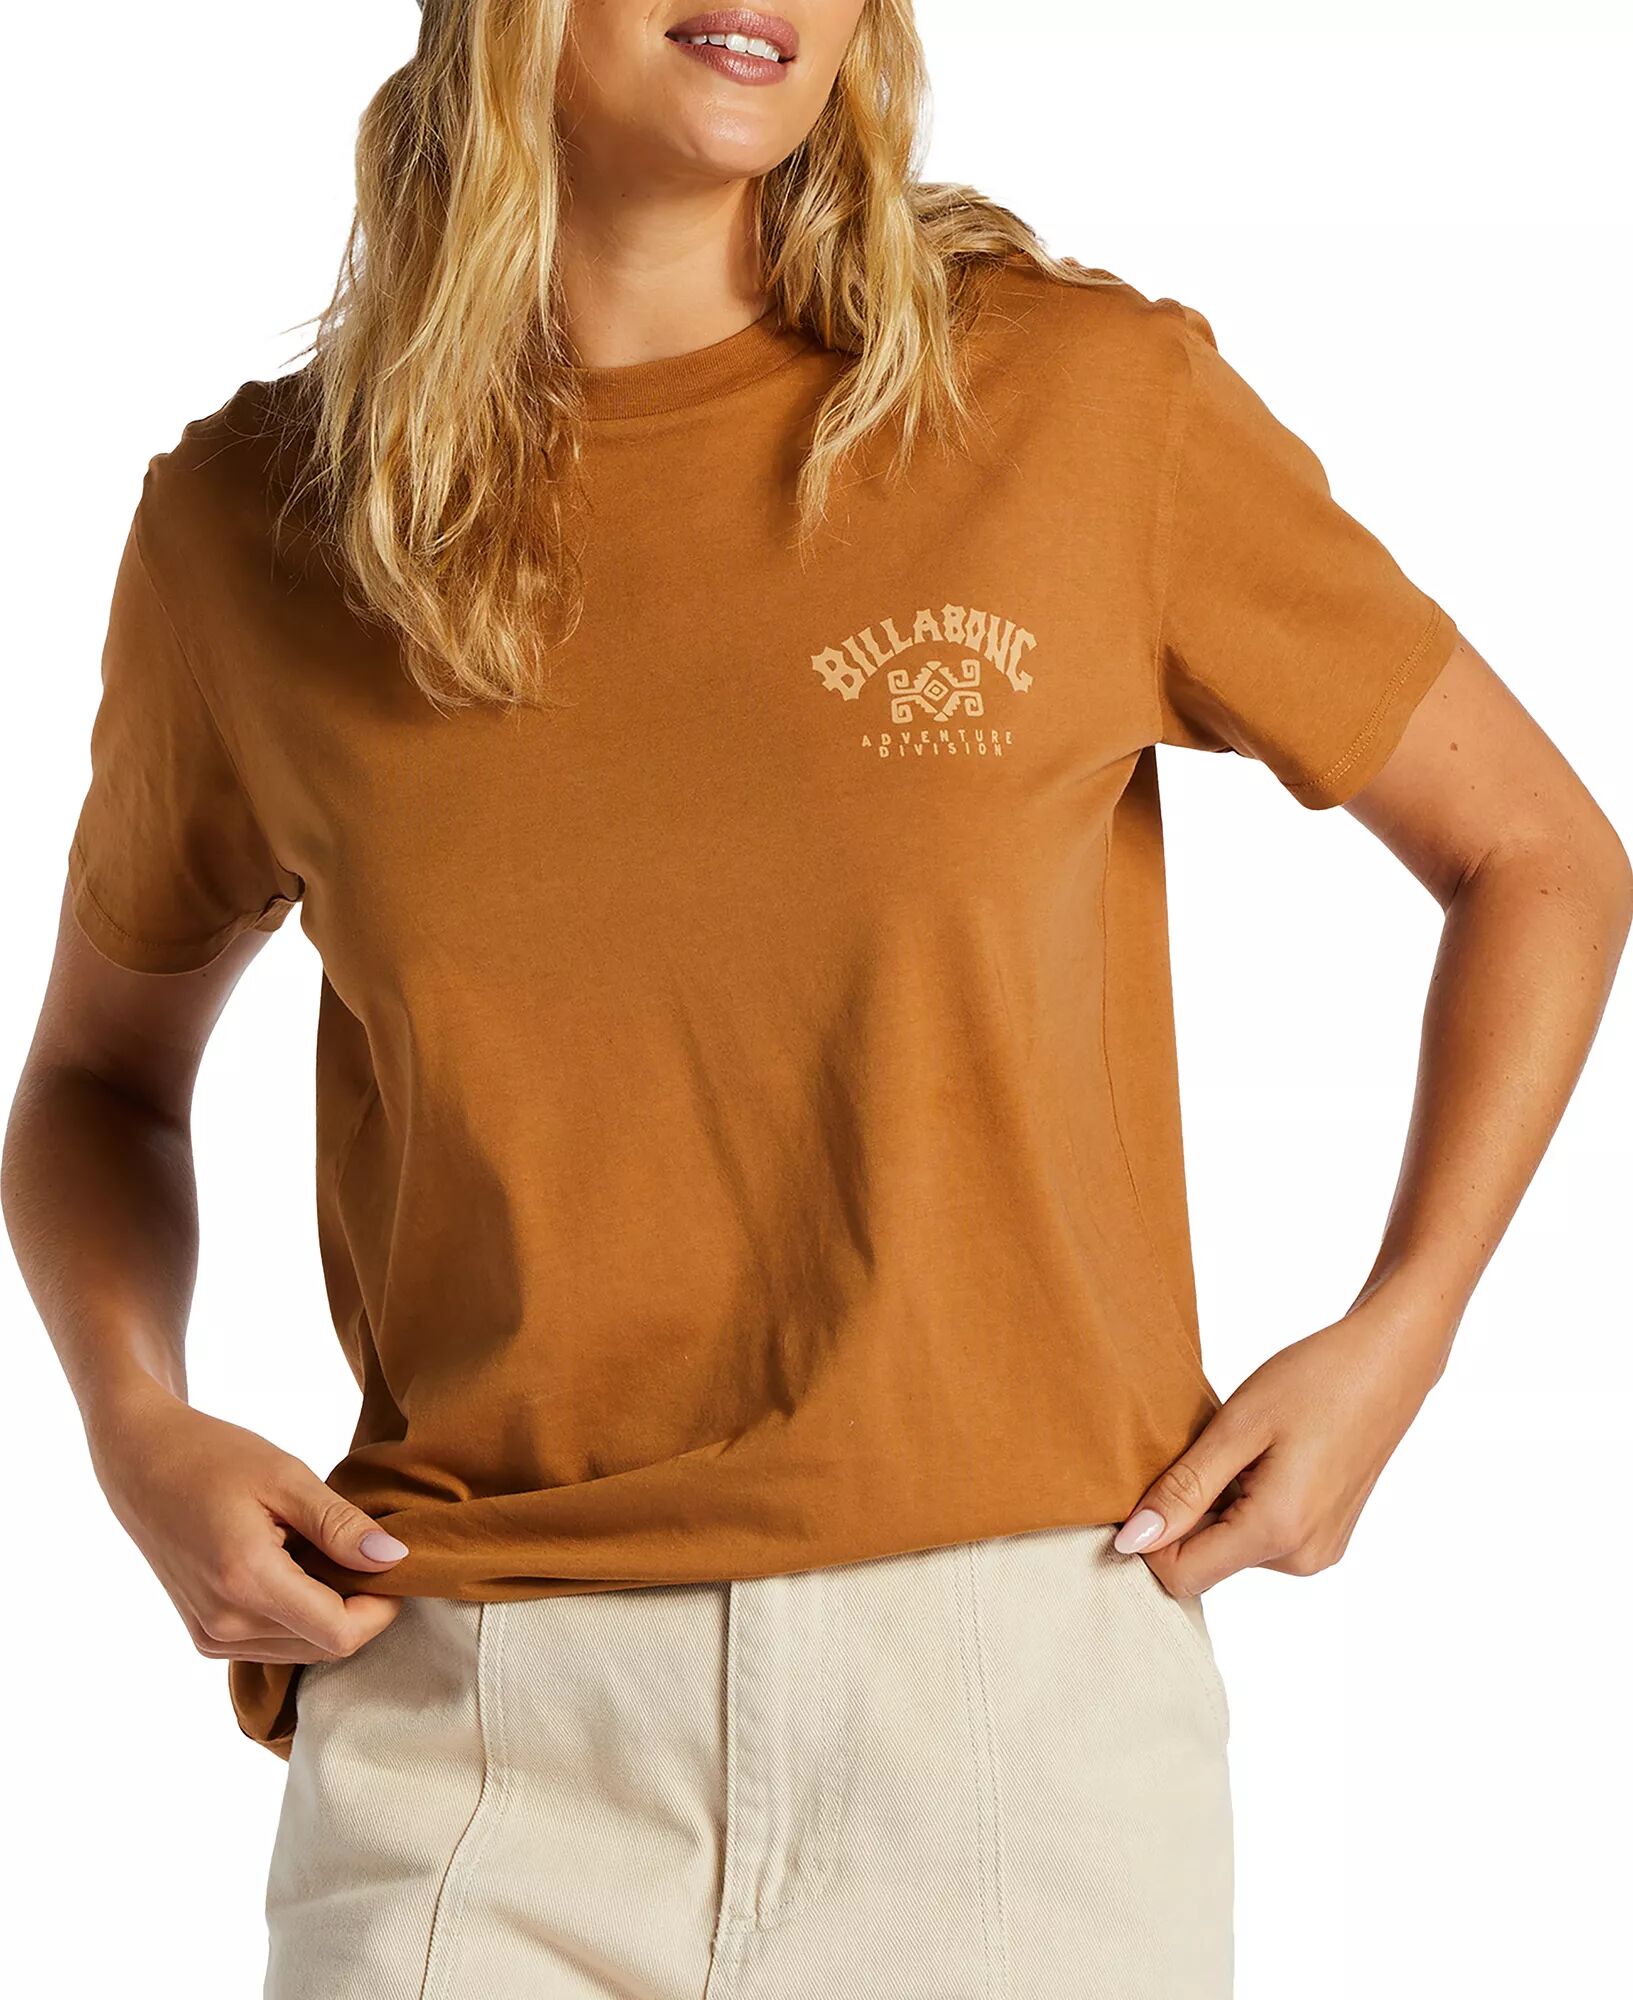 Billabong Women's A/DIV T-Shirt, Large, Tan